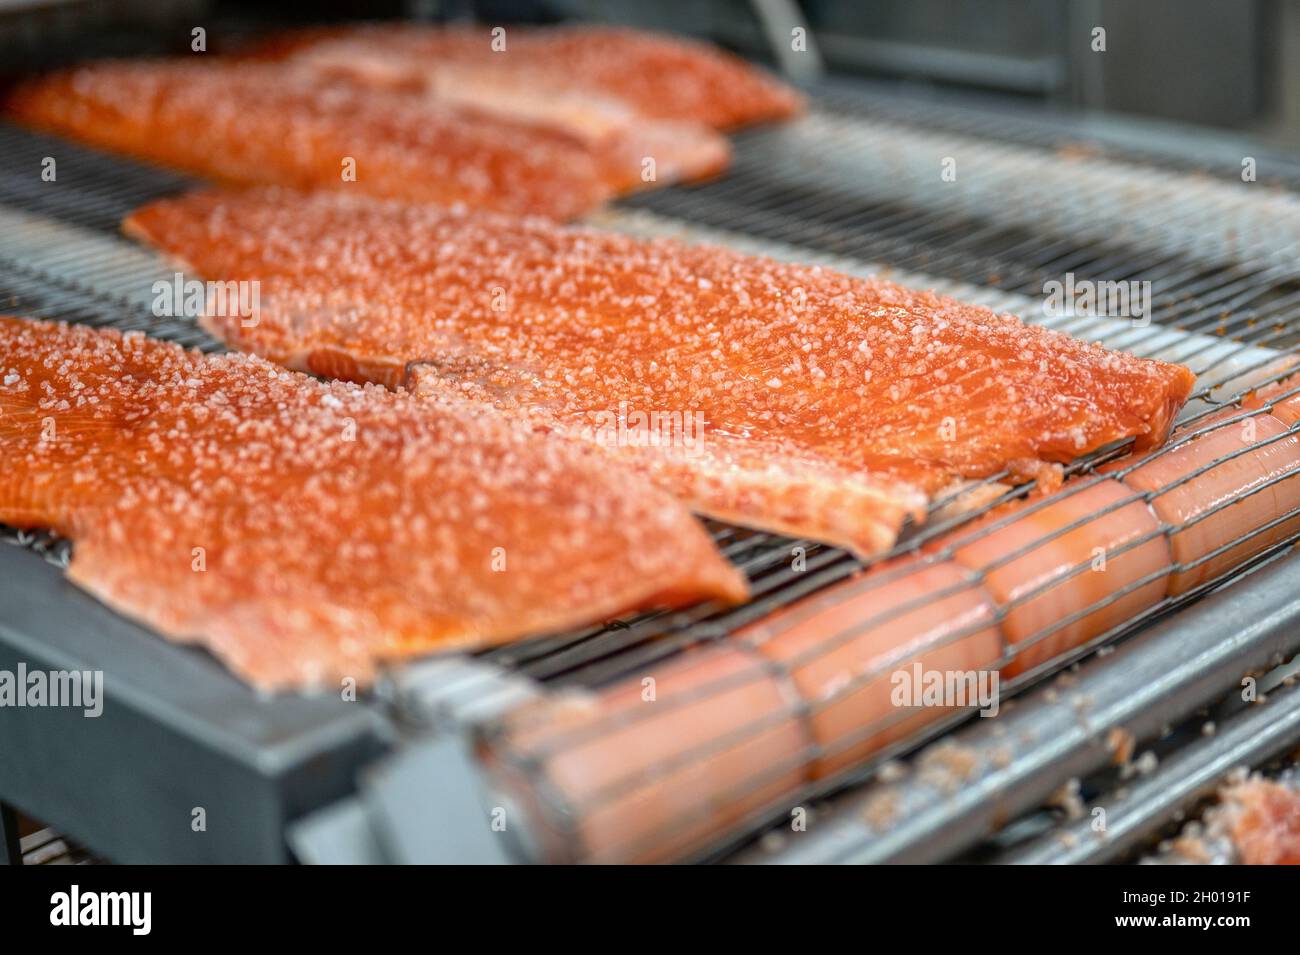 Viele Stücke von rotem Fischfilet, Lachs liegen auf einem Metallförderer Stockfoto